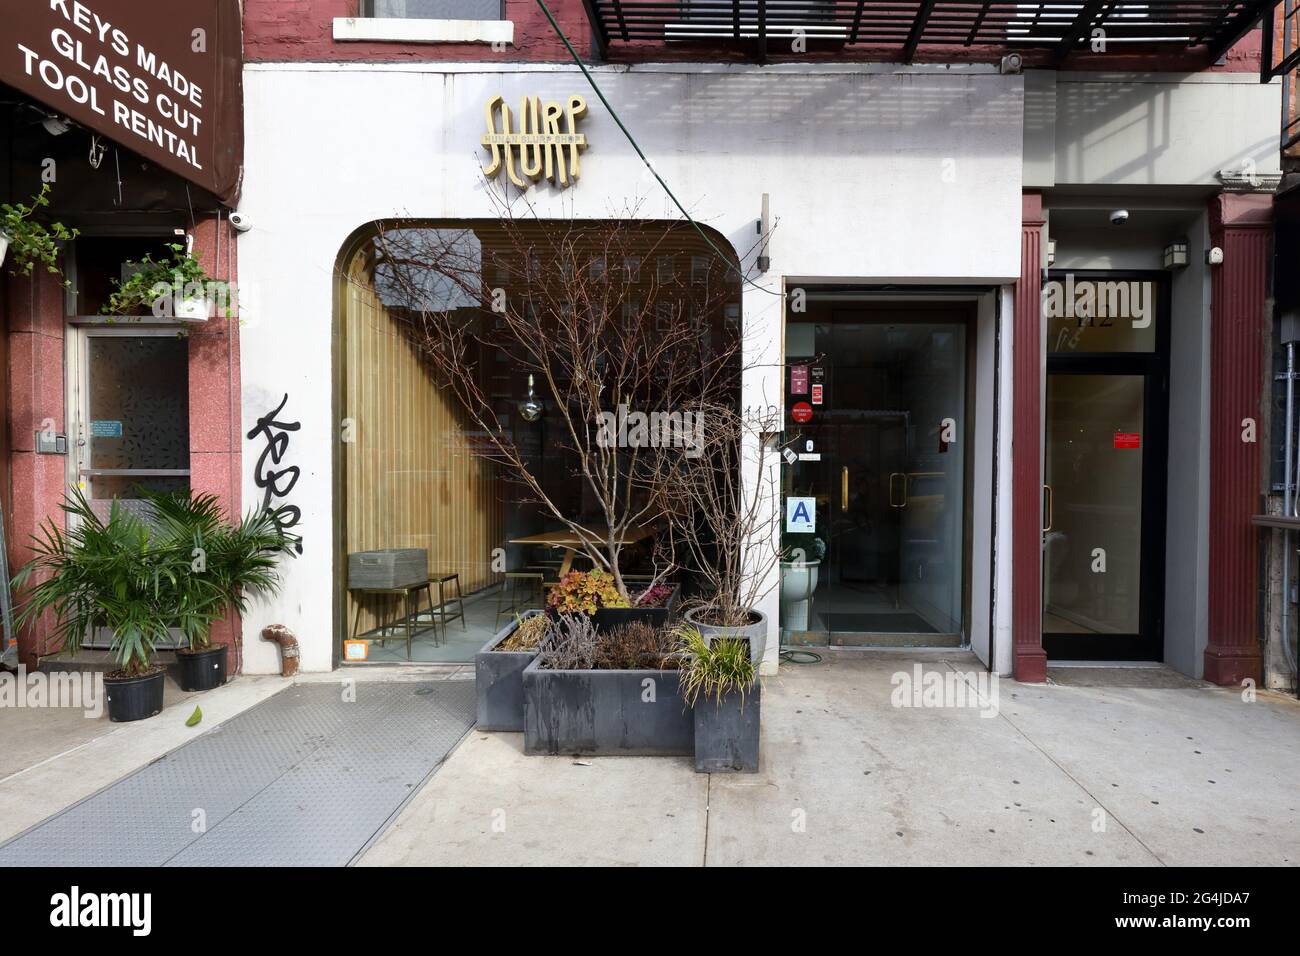 Hunan Slurp, 112 1. Avenue, New York, NYC Foto von einem chinesischen Restaurant in Hunan im East Village-Viertel von Manhattan. Stockfoto